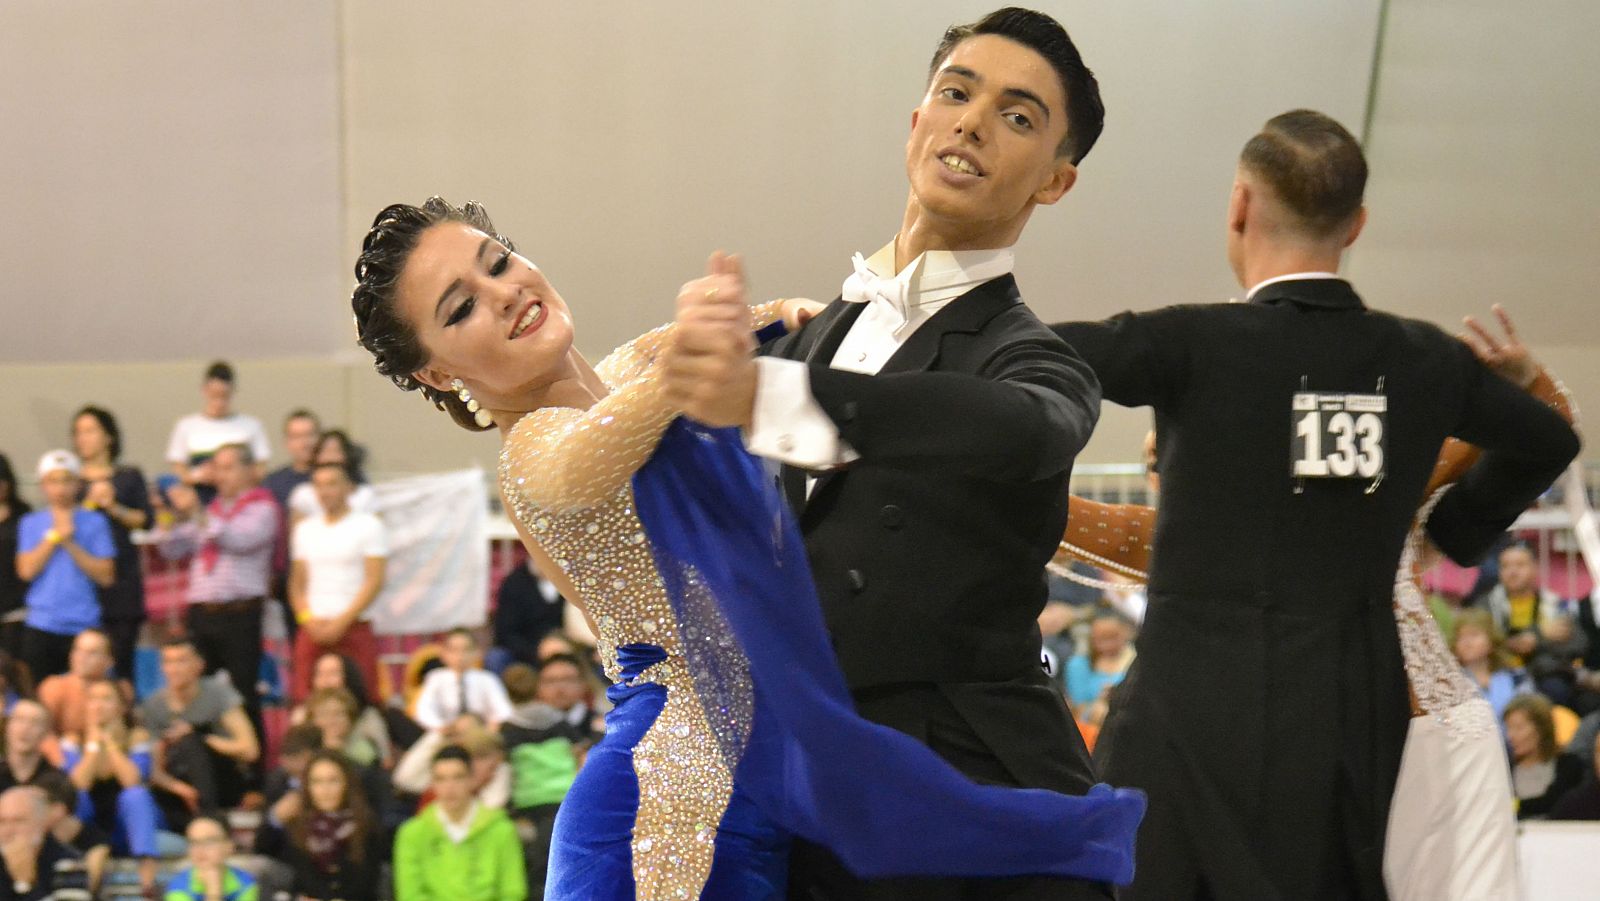 Una pareja baila en un campeonato de baile deportivo standard